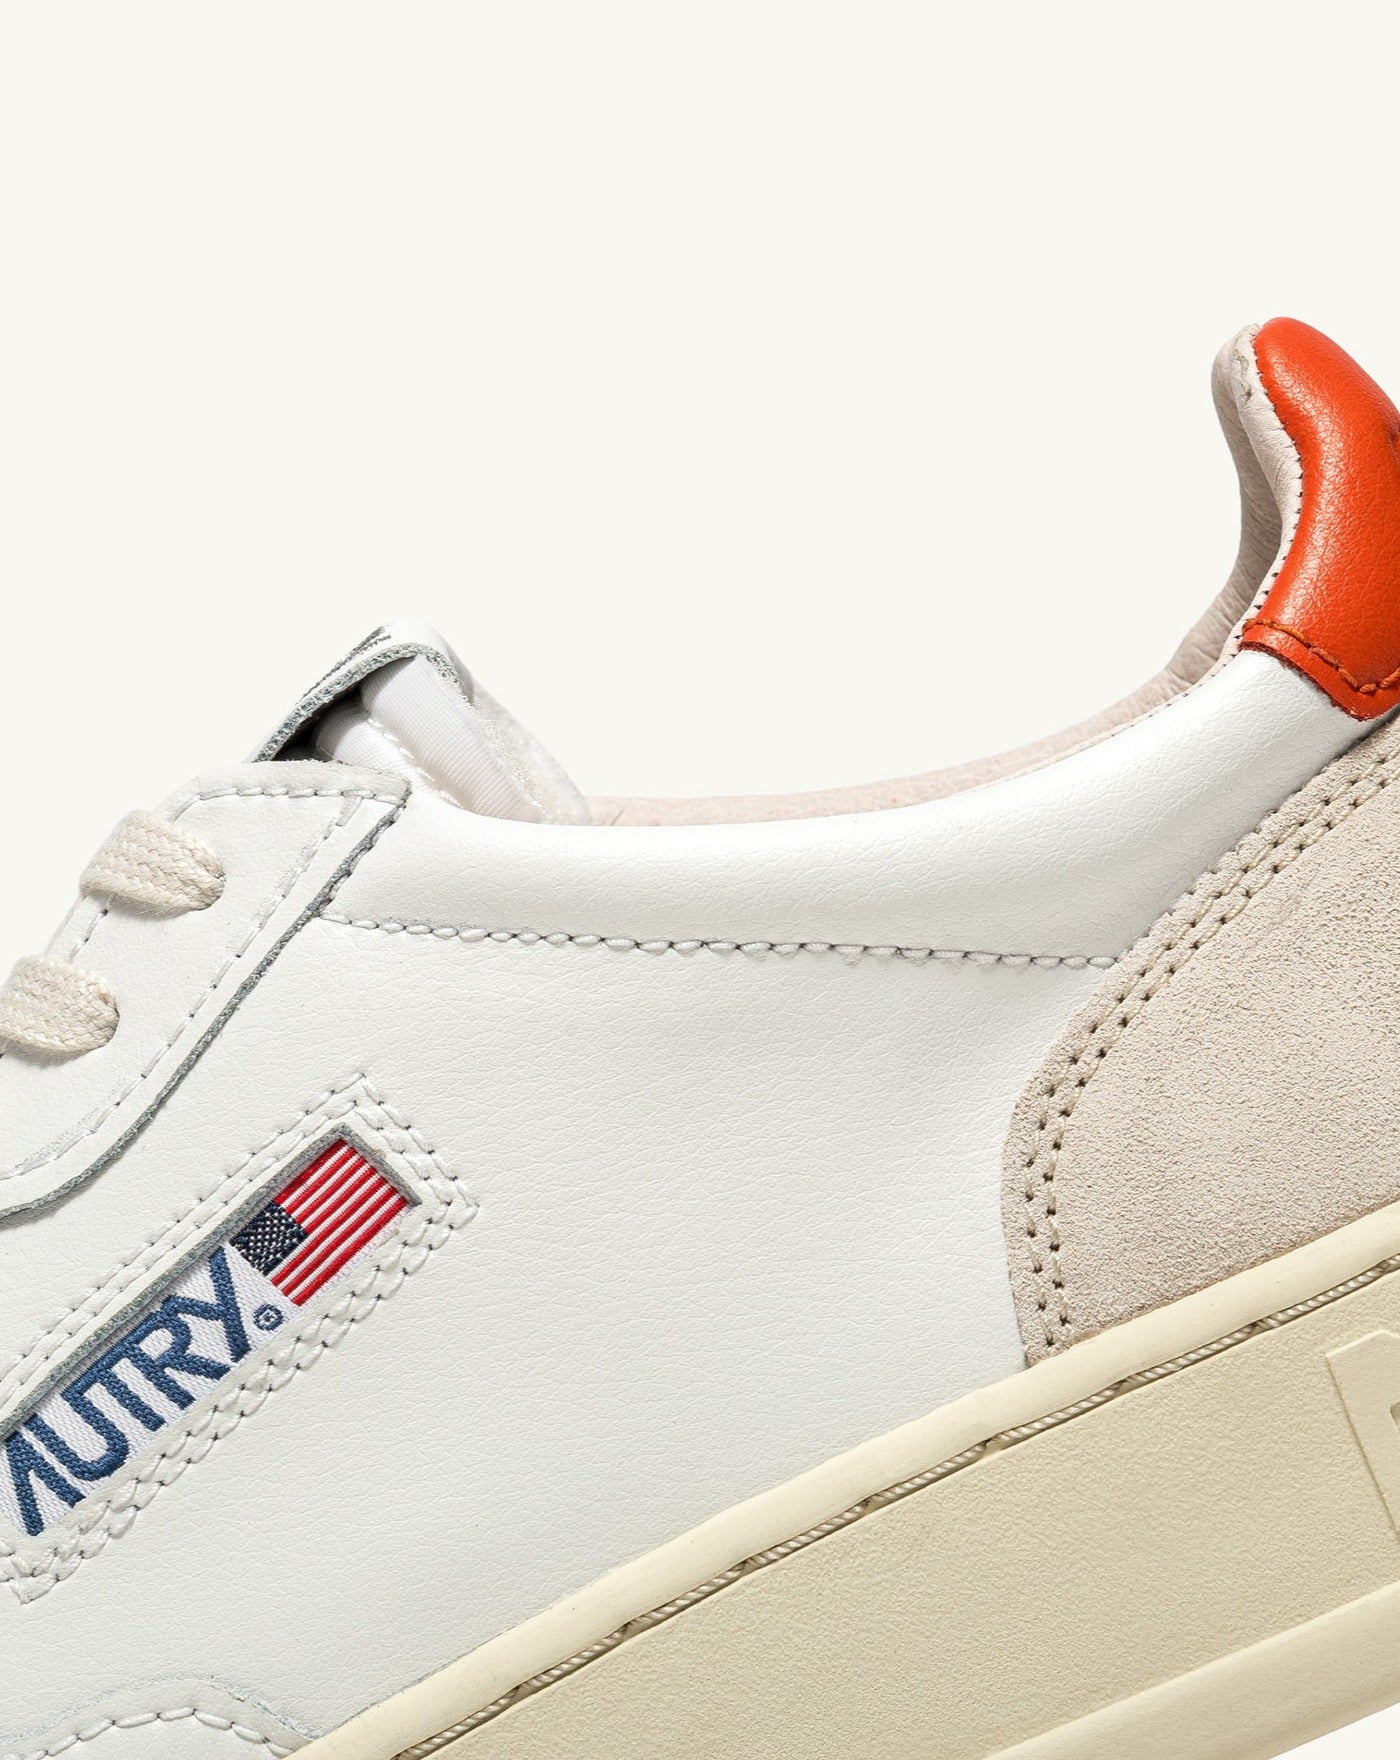 Autry LS40 White Orange sneakers